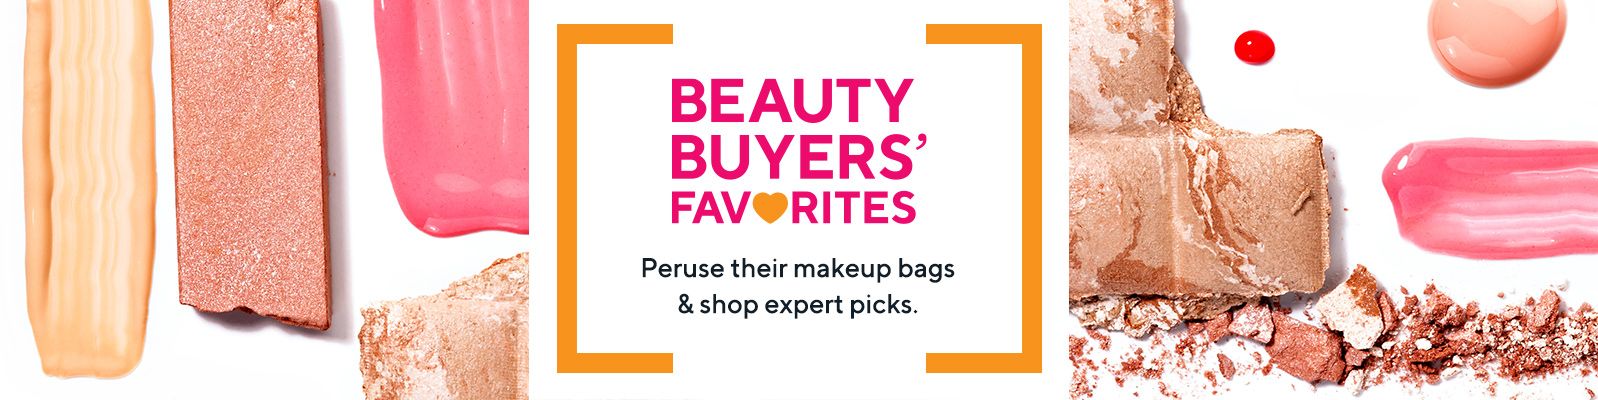 QVC beauty deals: Shop Tarte, Benefit Cosmetics, St. Tropez, Clinique